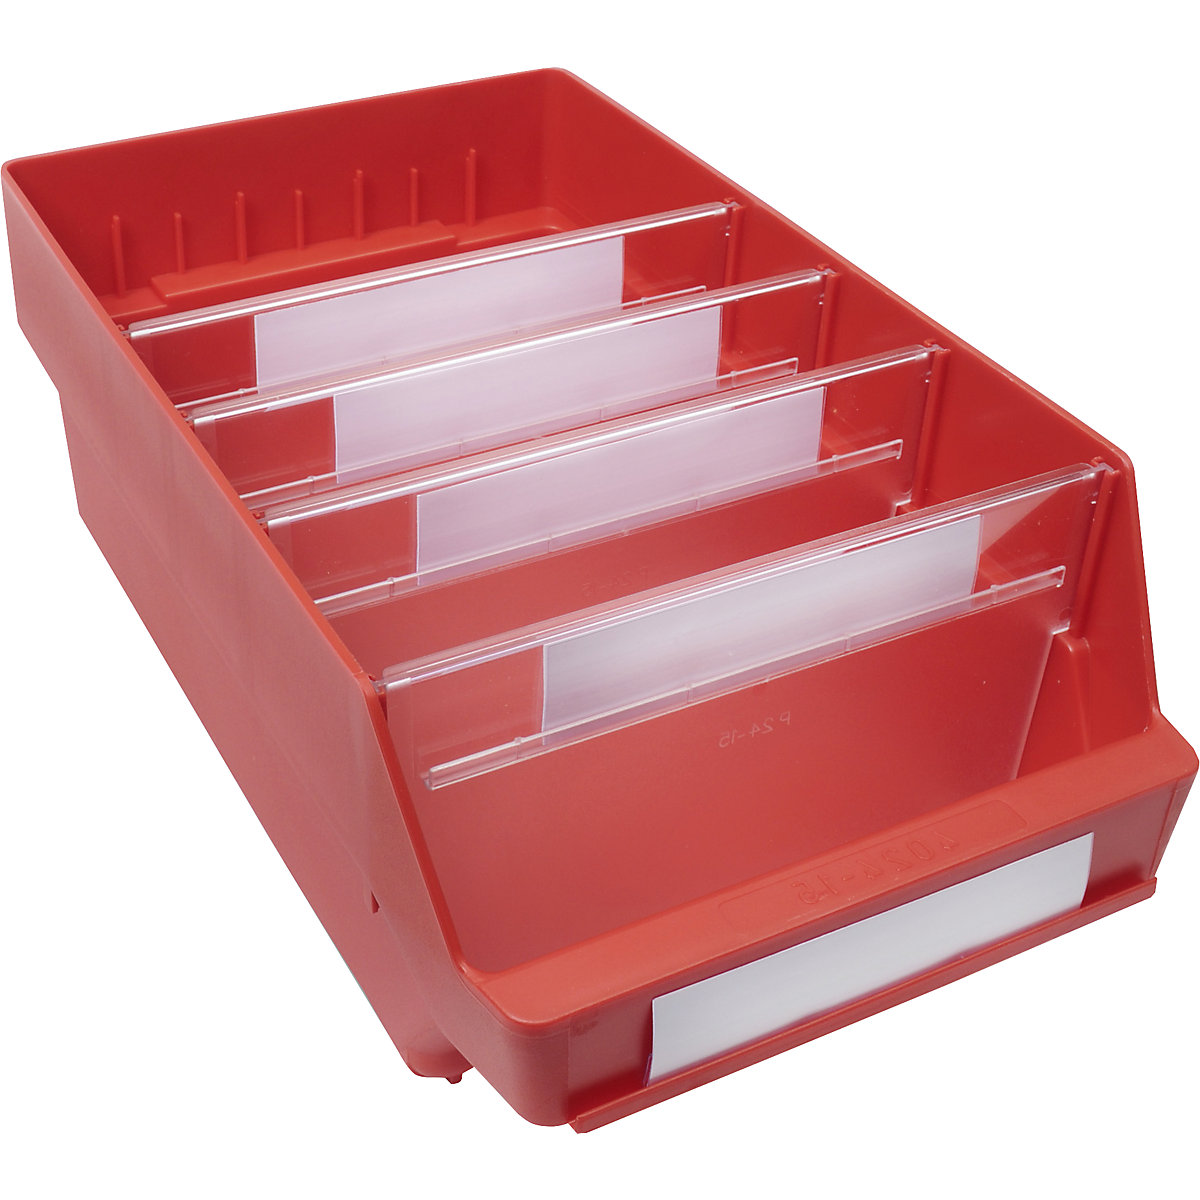 Regalkasten aus hochschlagfestem Polypropylen STEMO, rot, LxBxH 400 x 240 x 150 mm, VE 10 Stk-17